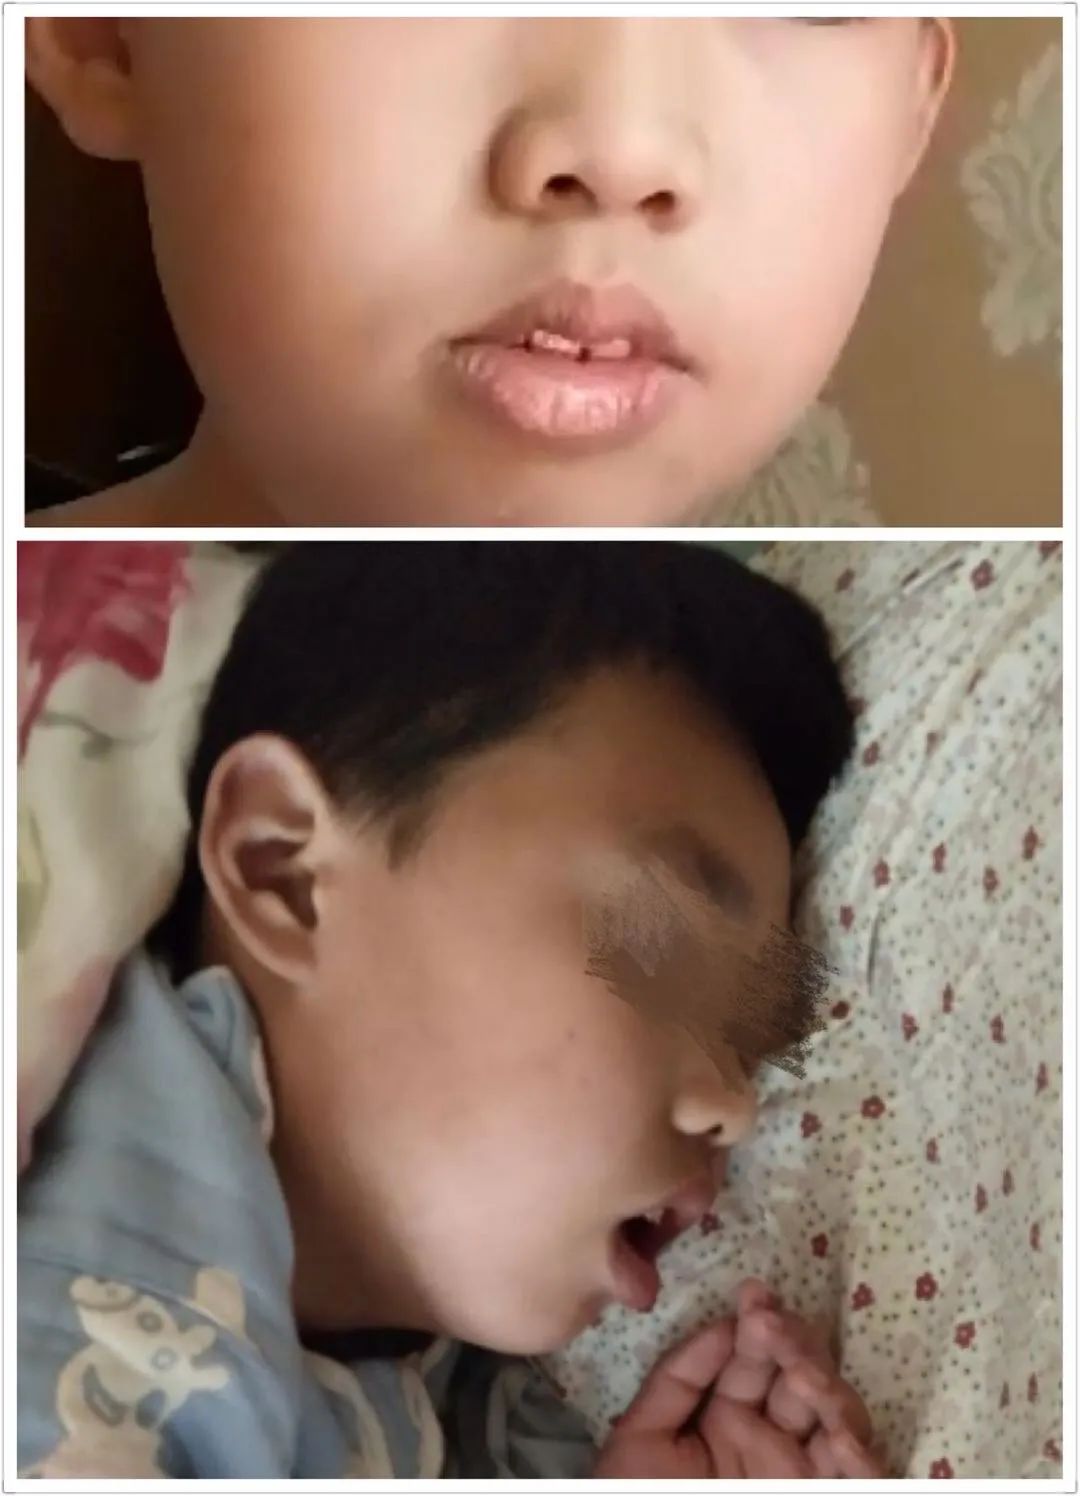 腺样体手术后为何孩子仍打呼张嘴呼吸黑眼圈严重